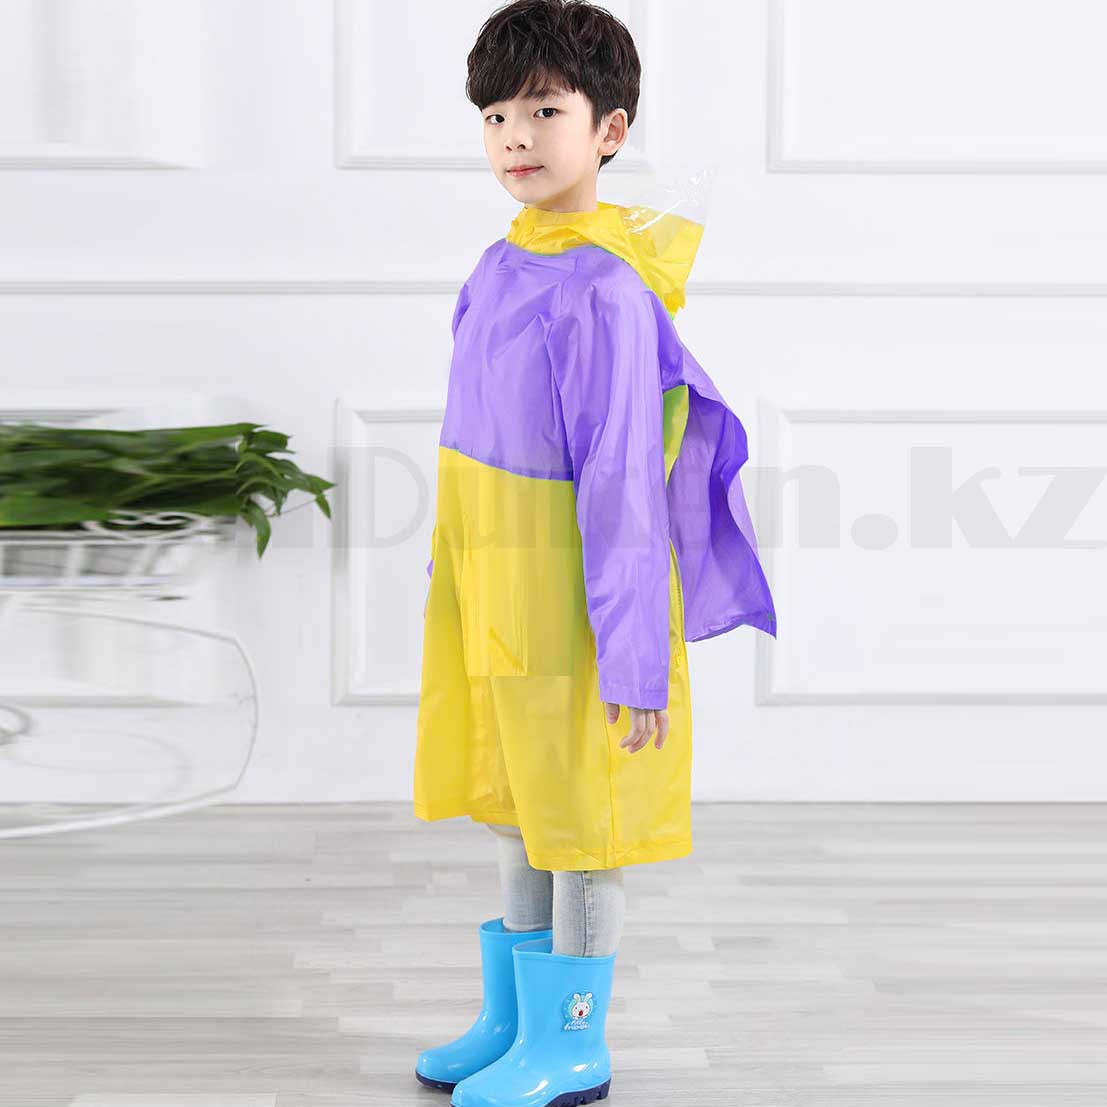 Дождевик детский из непромокаемой ткани с козырьком на капюшоне складным отсеком для рюкзака YH868 желтый, фото 1